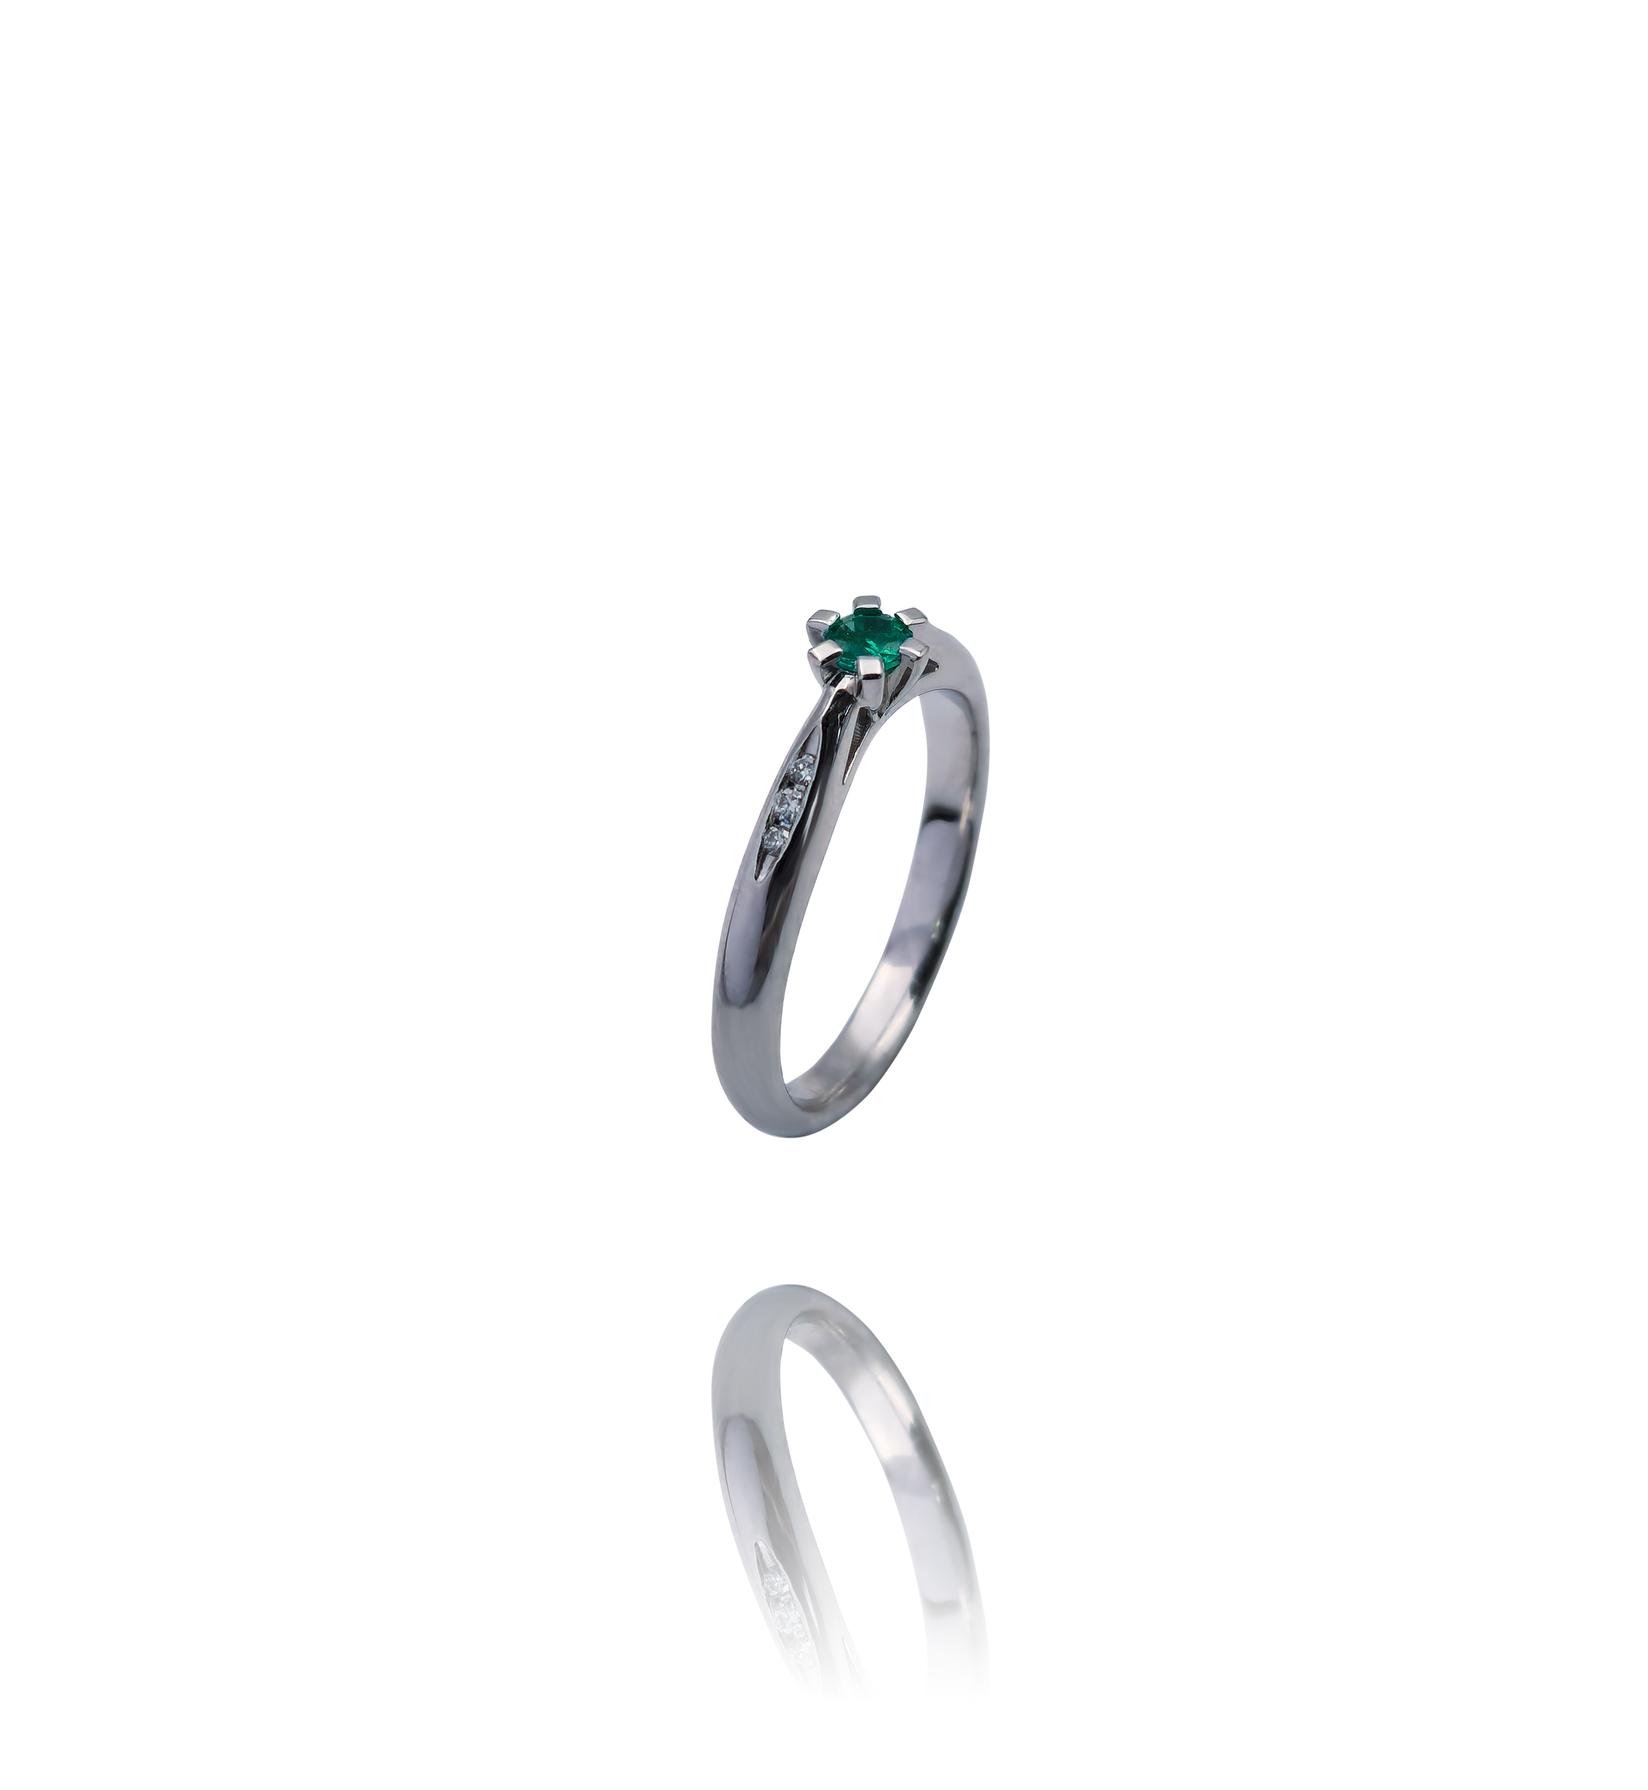 Selected image for Ženski prsten od Belog zlata sa Brilijantima i Smaragdom, 585, 12mm